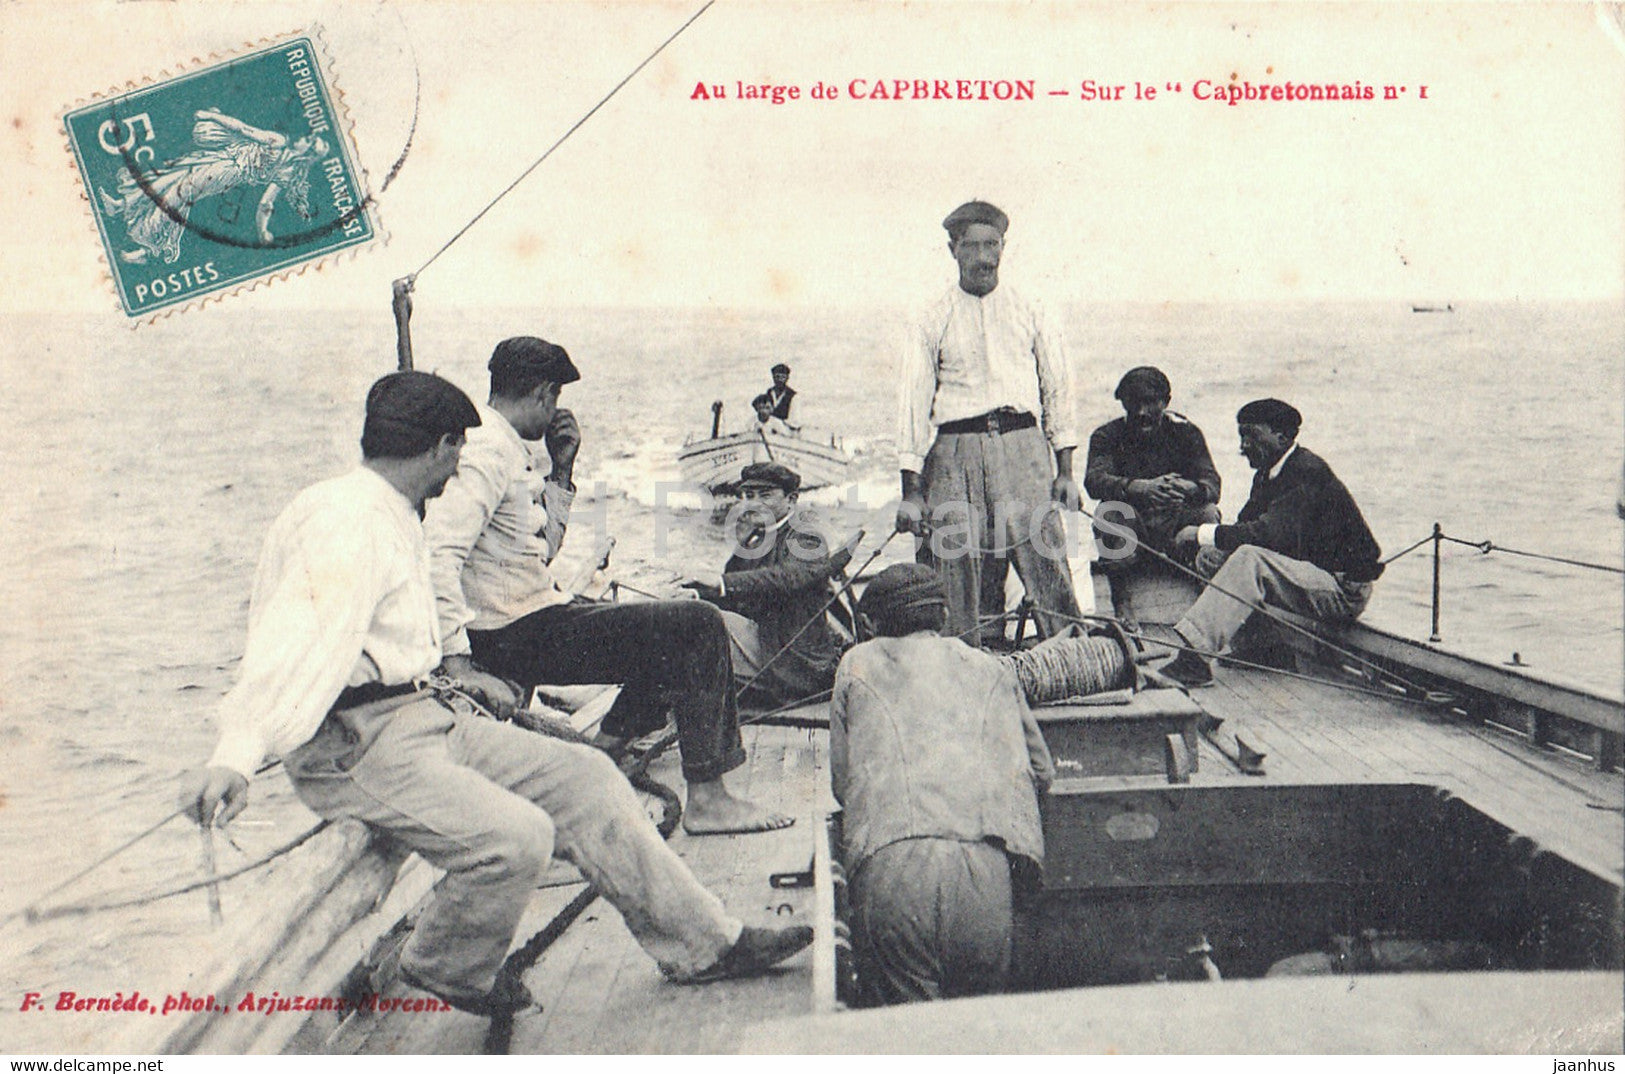 Au large de Capbreton - Sur le Capbretonnais - ship - old postcard - France - used - JH Postcards